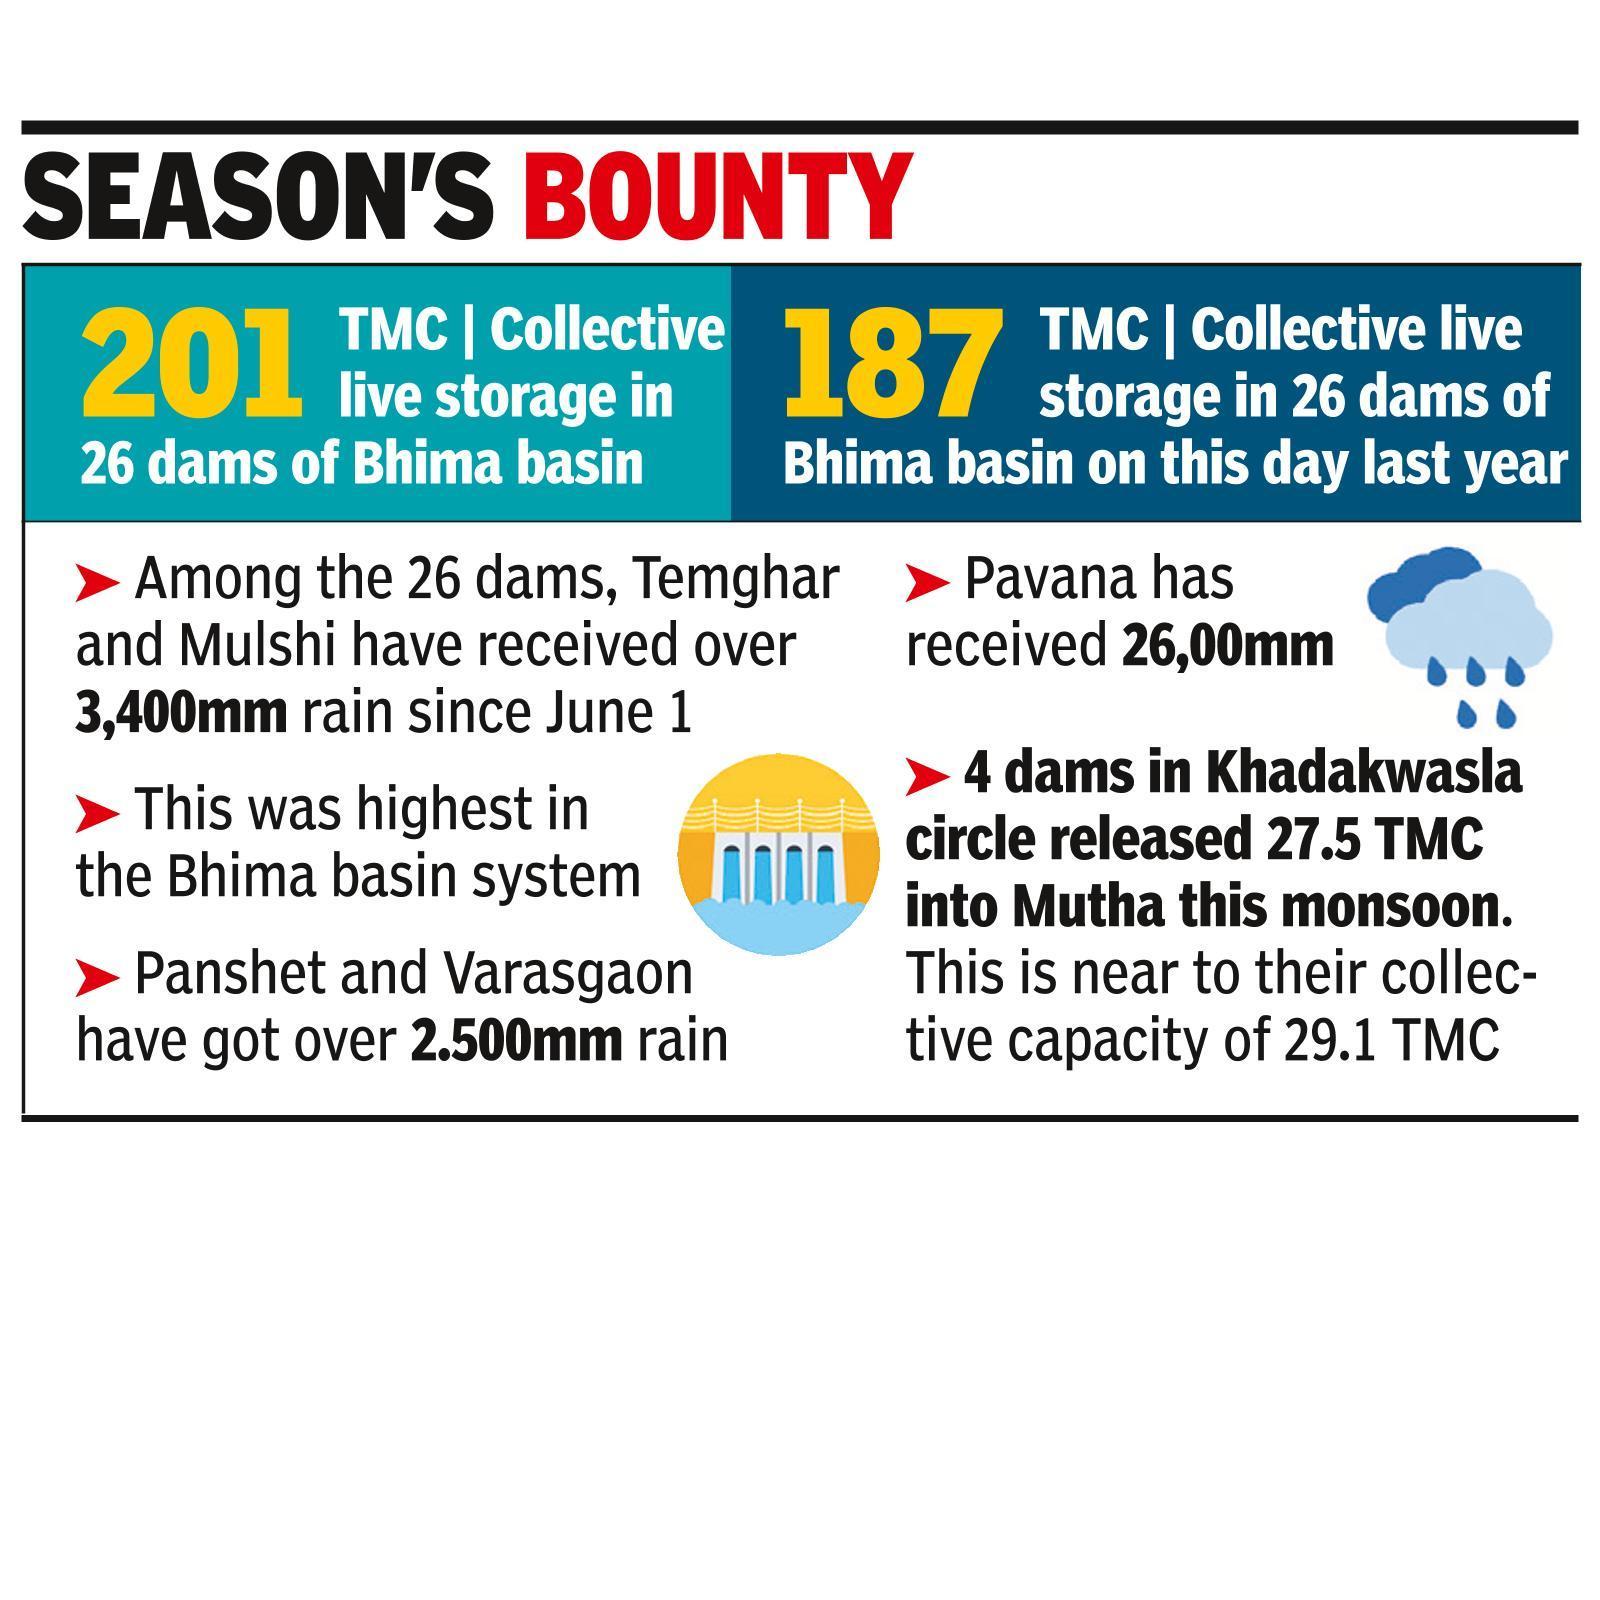 21 of 26 Bhima basin dams 100% full; highest rainfall for Temghar, Mulshi